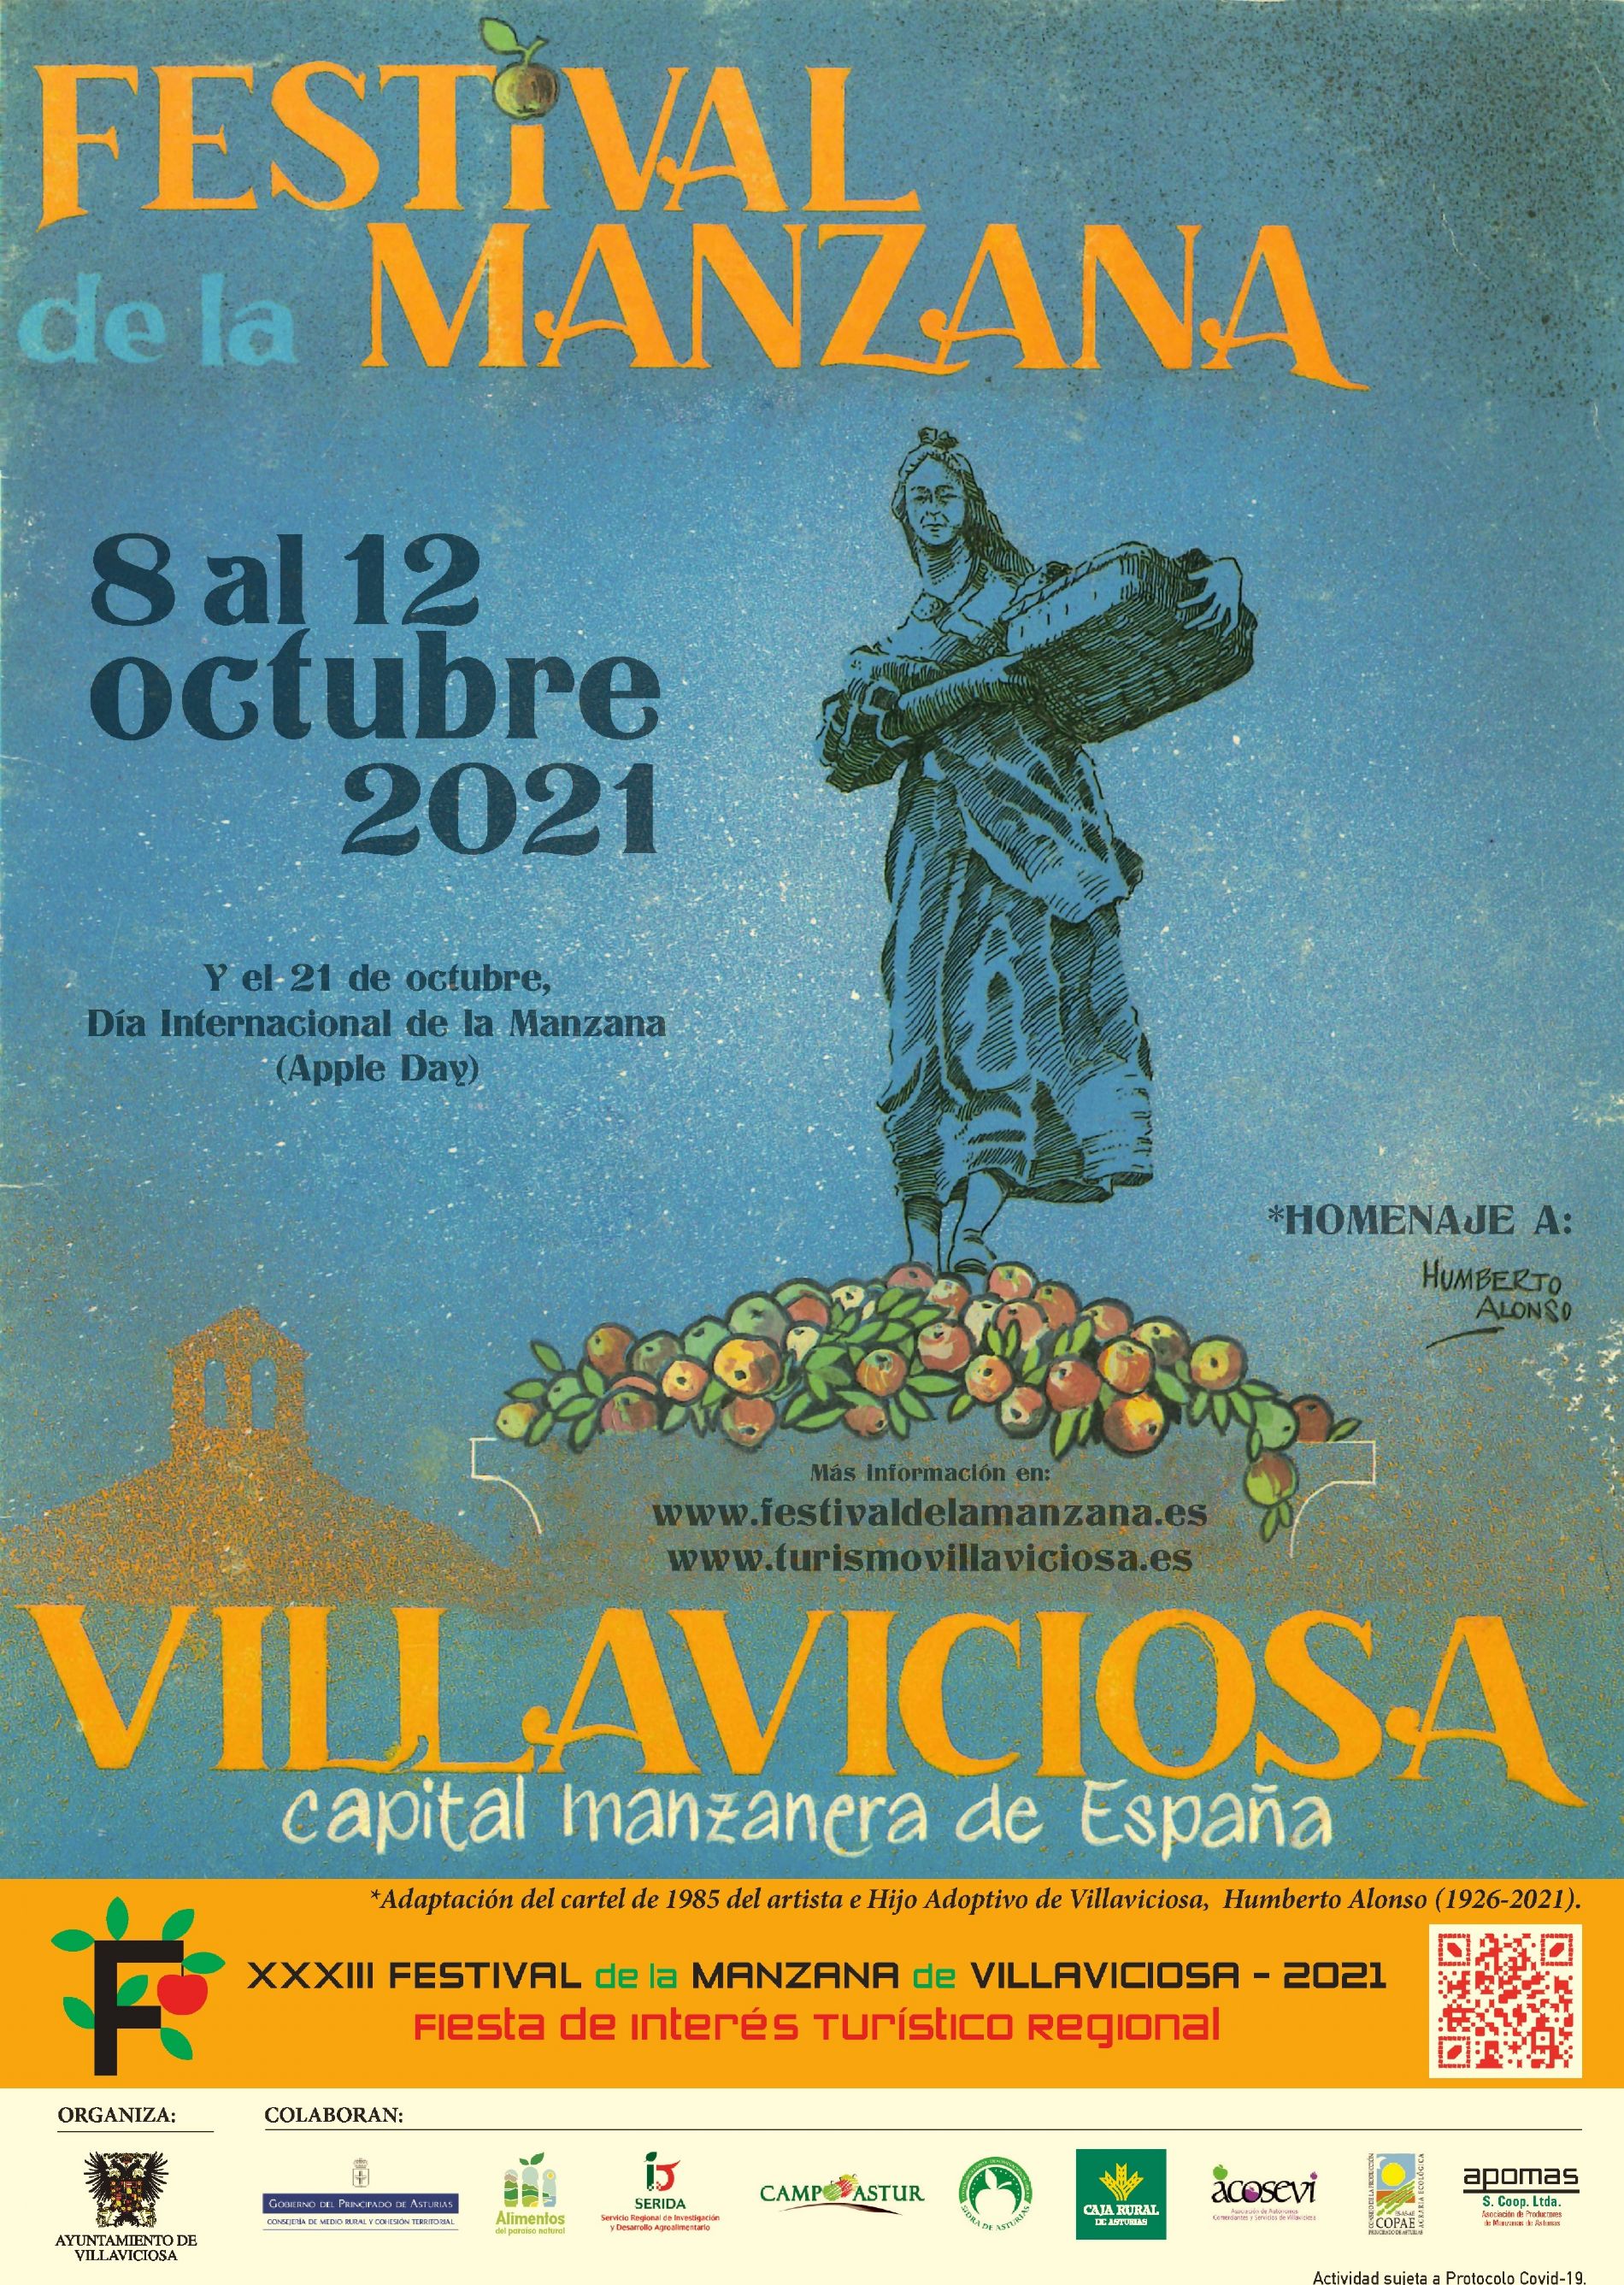 XXXIII Festival de la manzana en Villaviciosa (Asturias) - (2021)